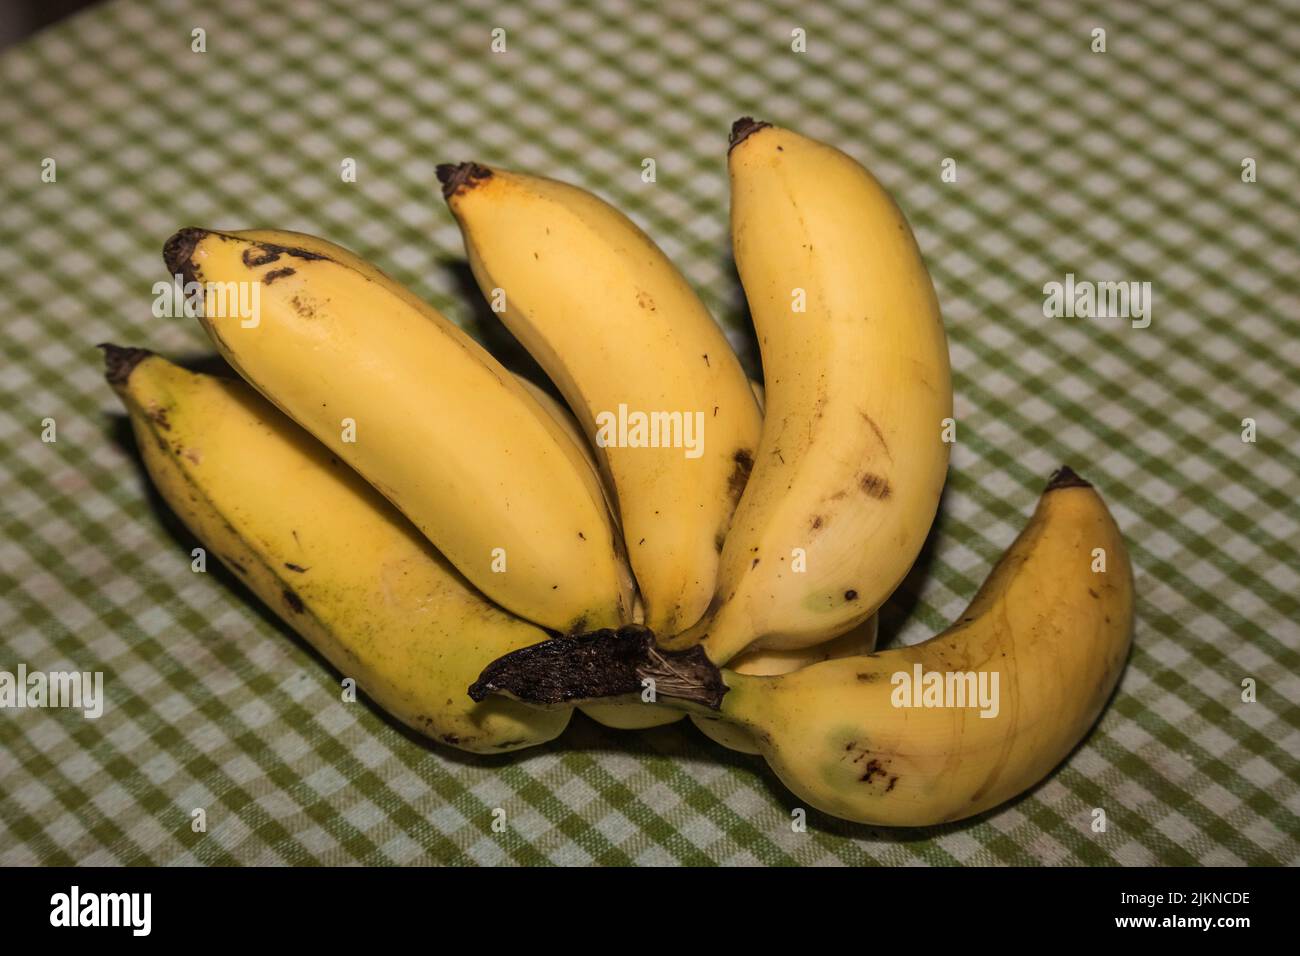 Ripened Banana on a Table Stock Photo